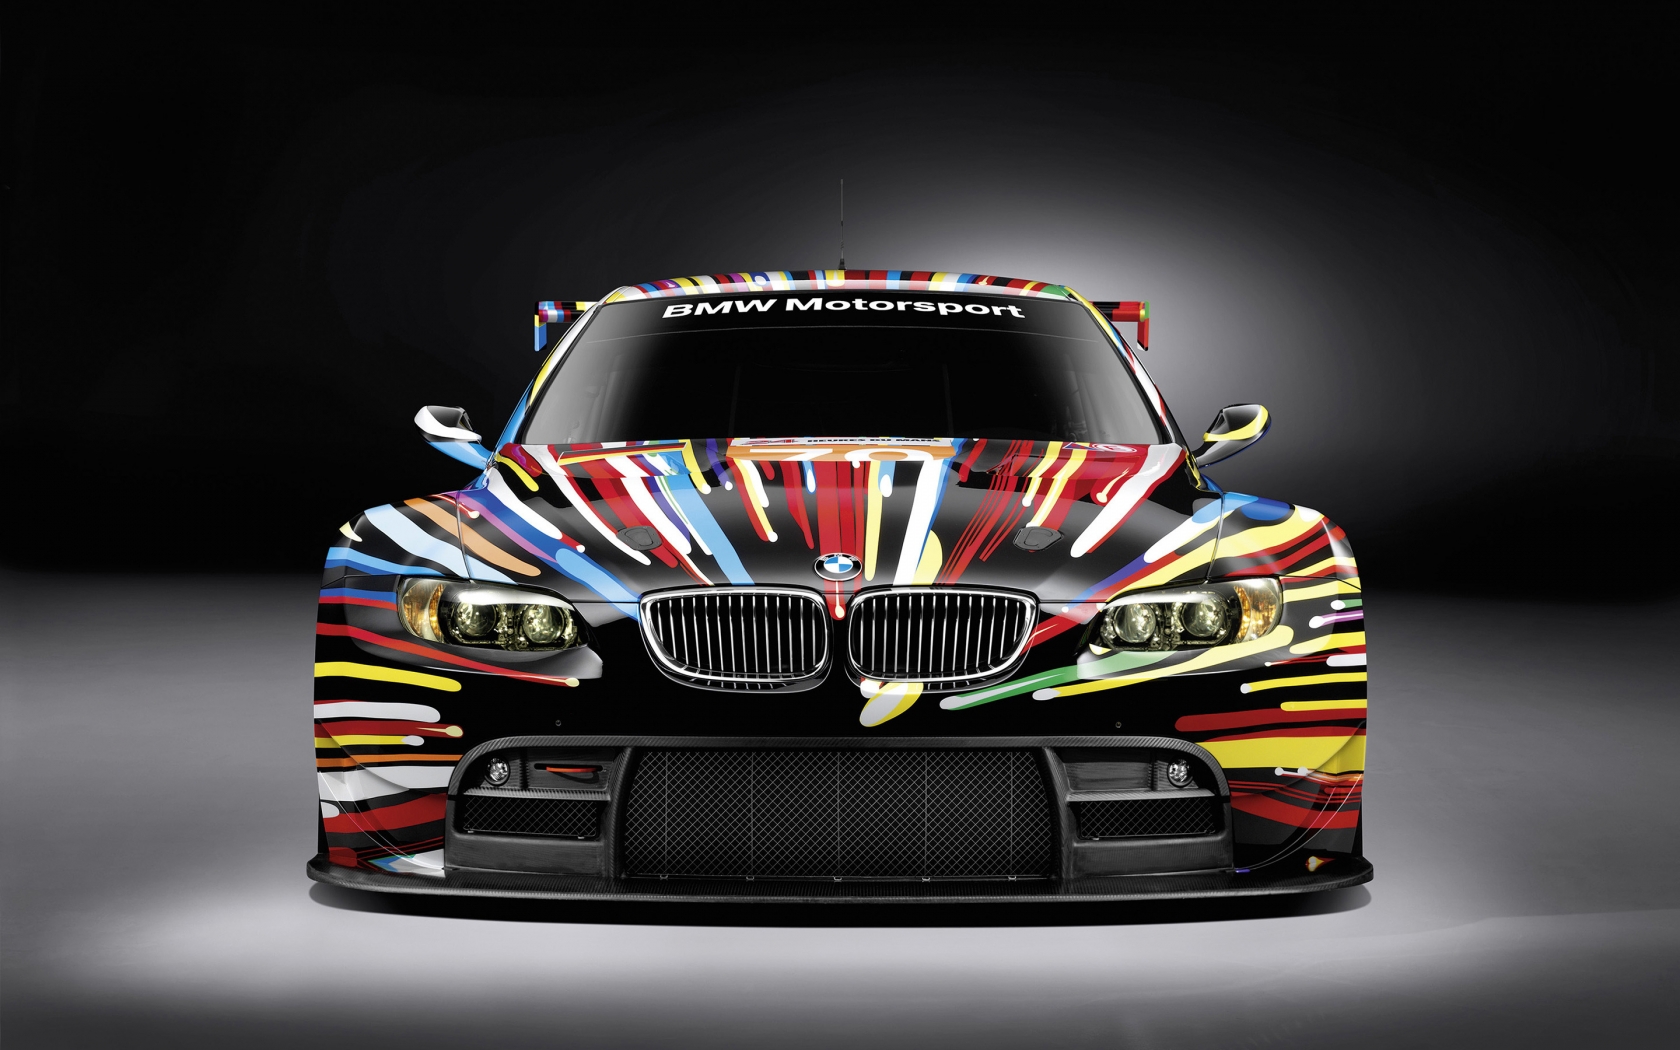 BMW M3 GT 2 Art for 1680 x 1050 widescreen resolution